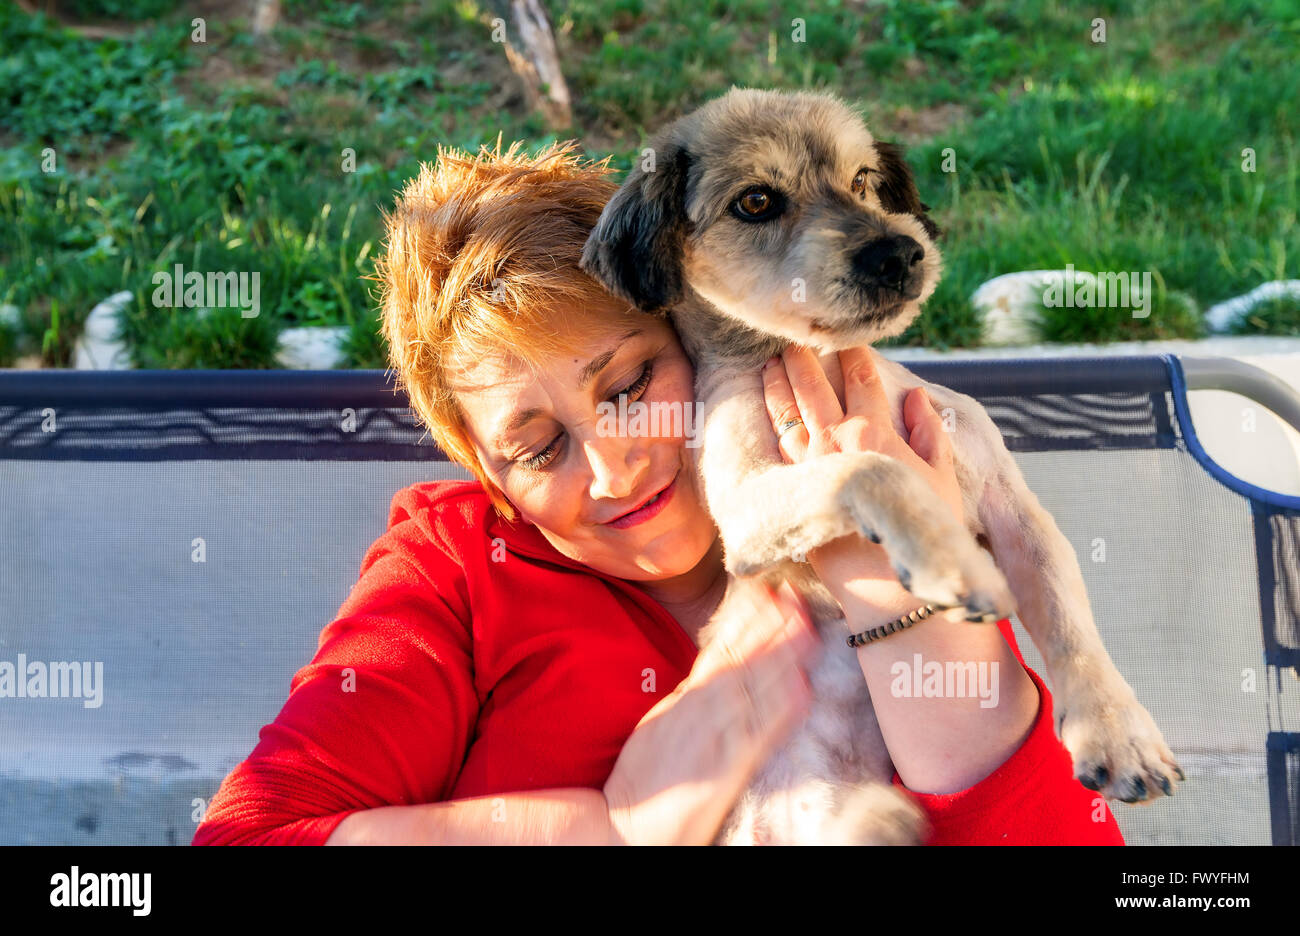 Hunedoara, Rumänien - 1. Juli 2014: glückliche Blonde Frau hielt sich an die Brust neu Hund In Hunedoara am 1. Juli 2014 verabschiedet Stockfoto